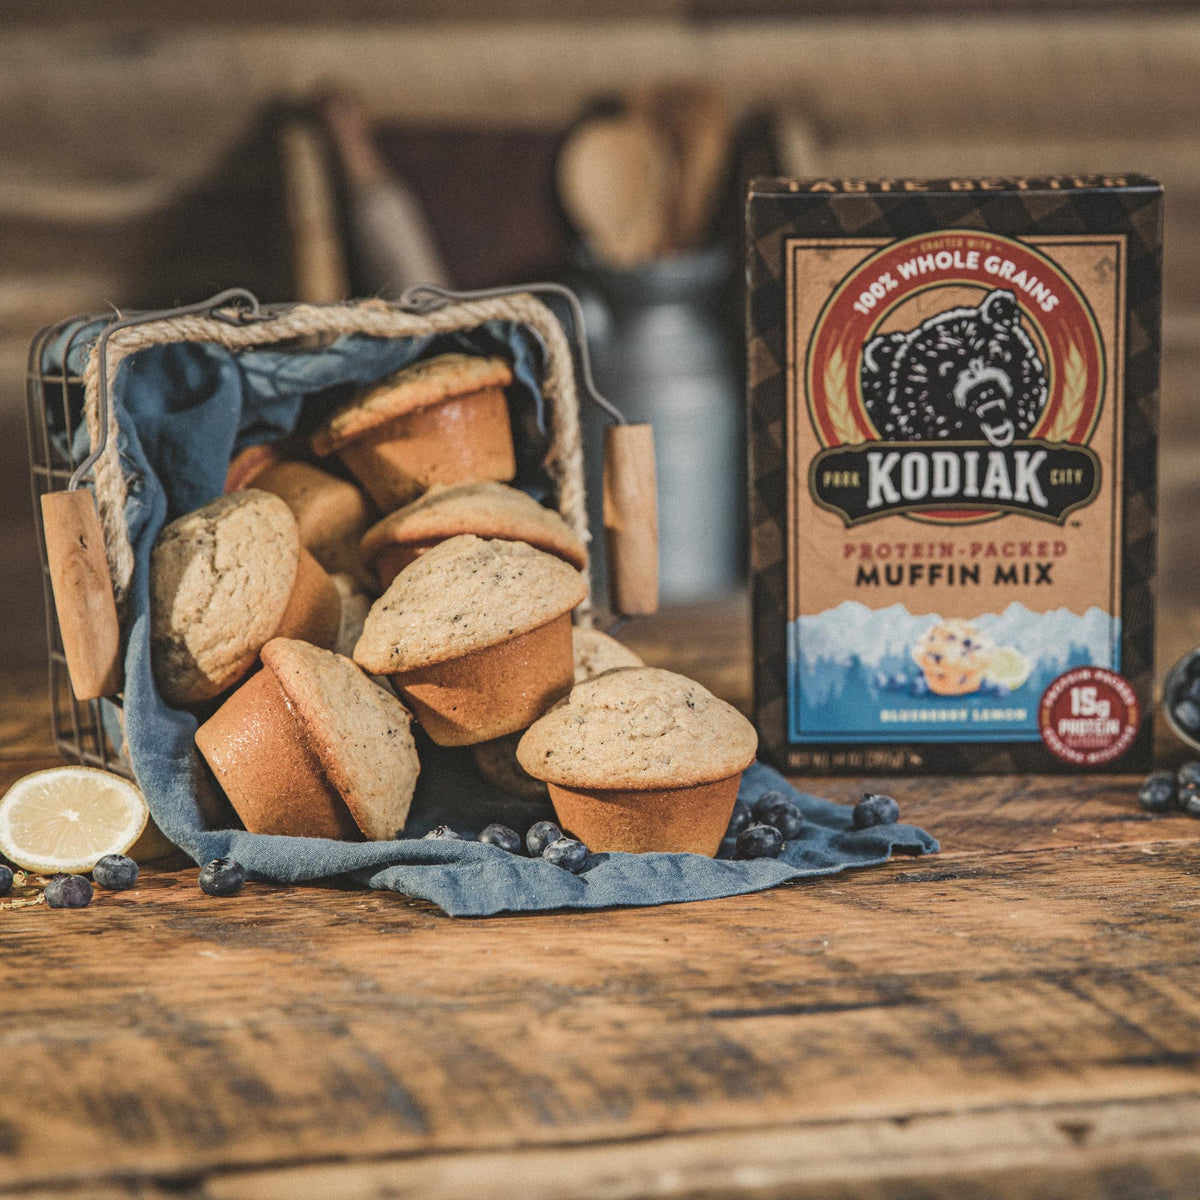 Kernza Power Cakes – Kodiak